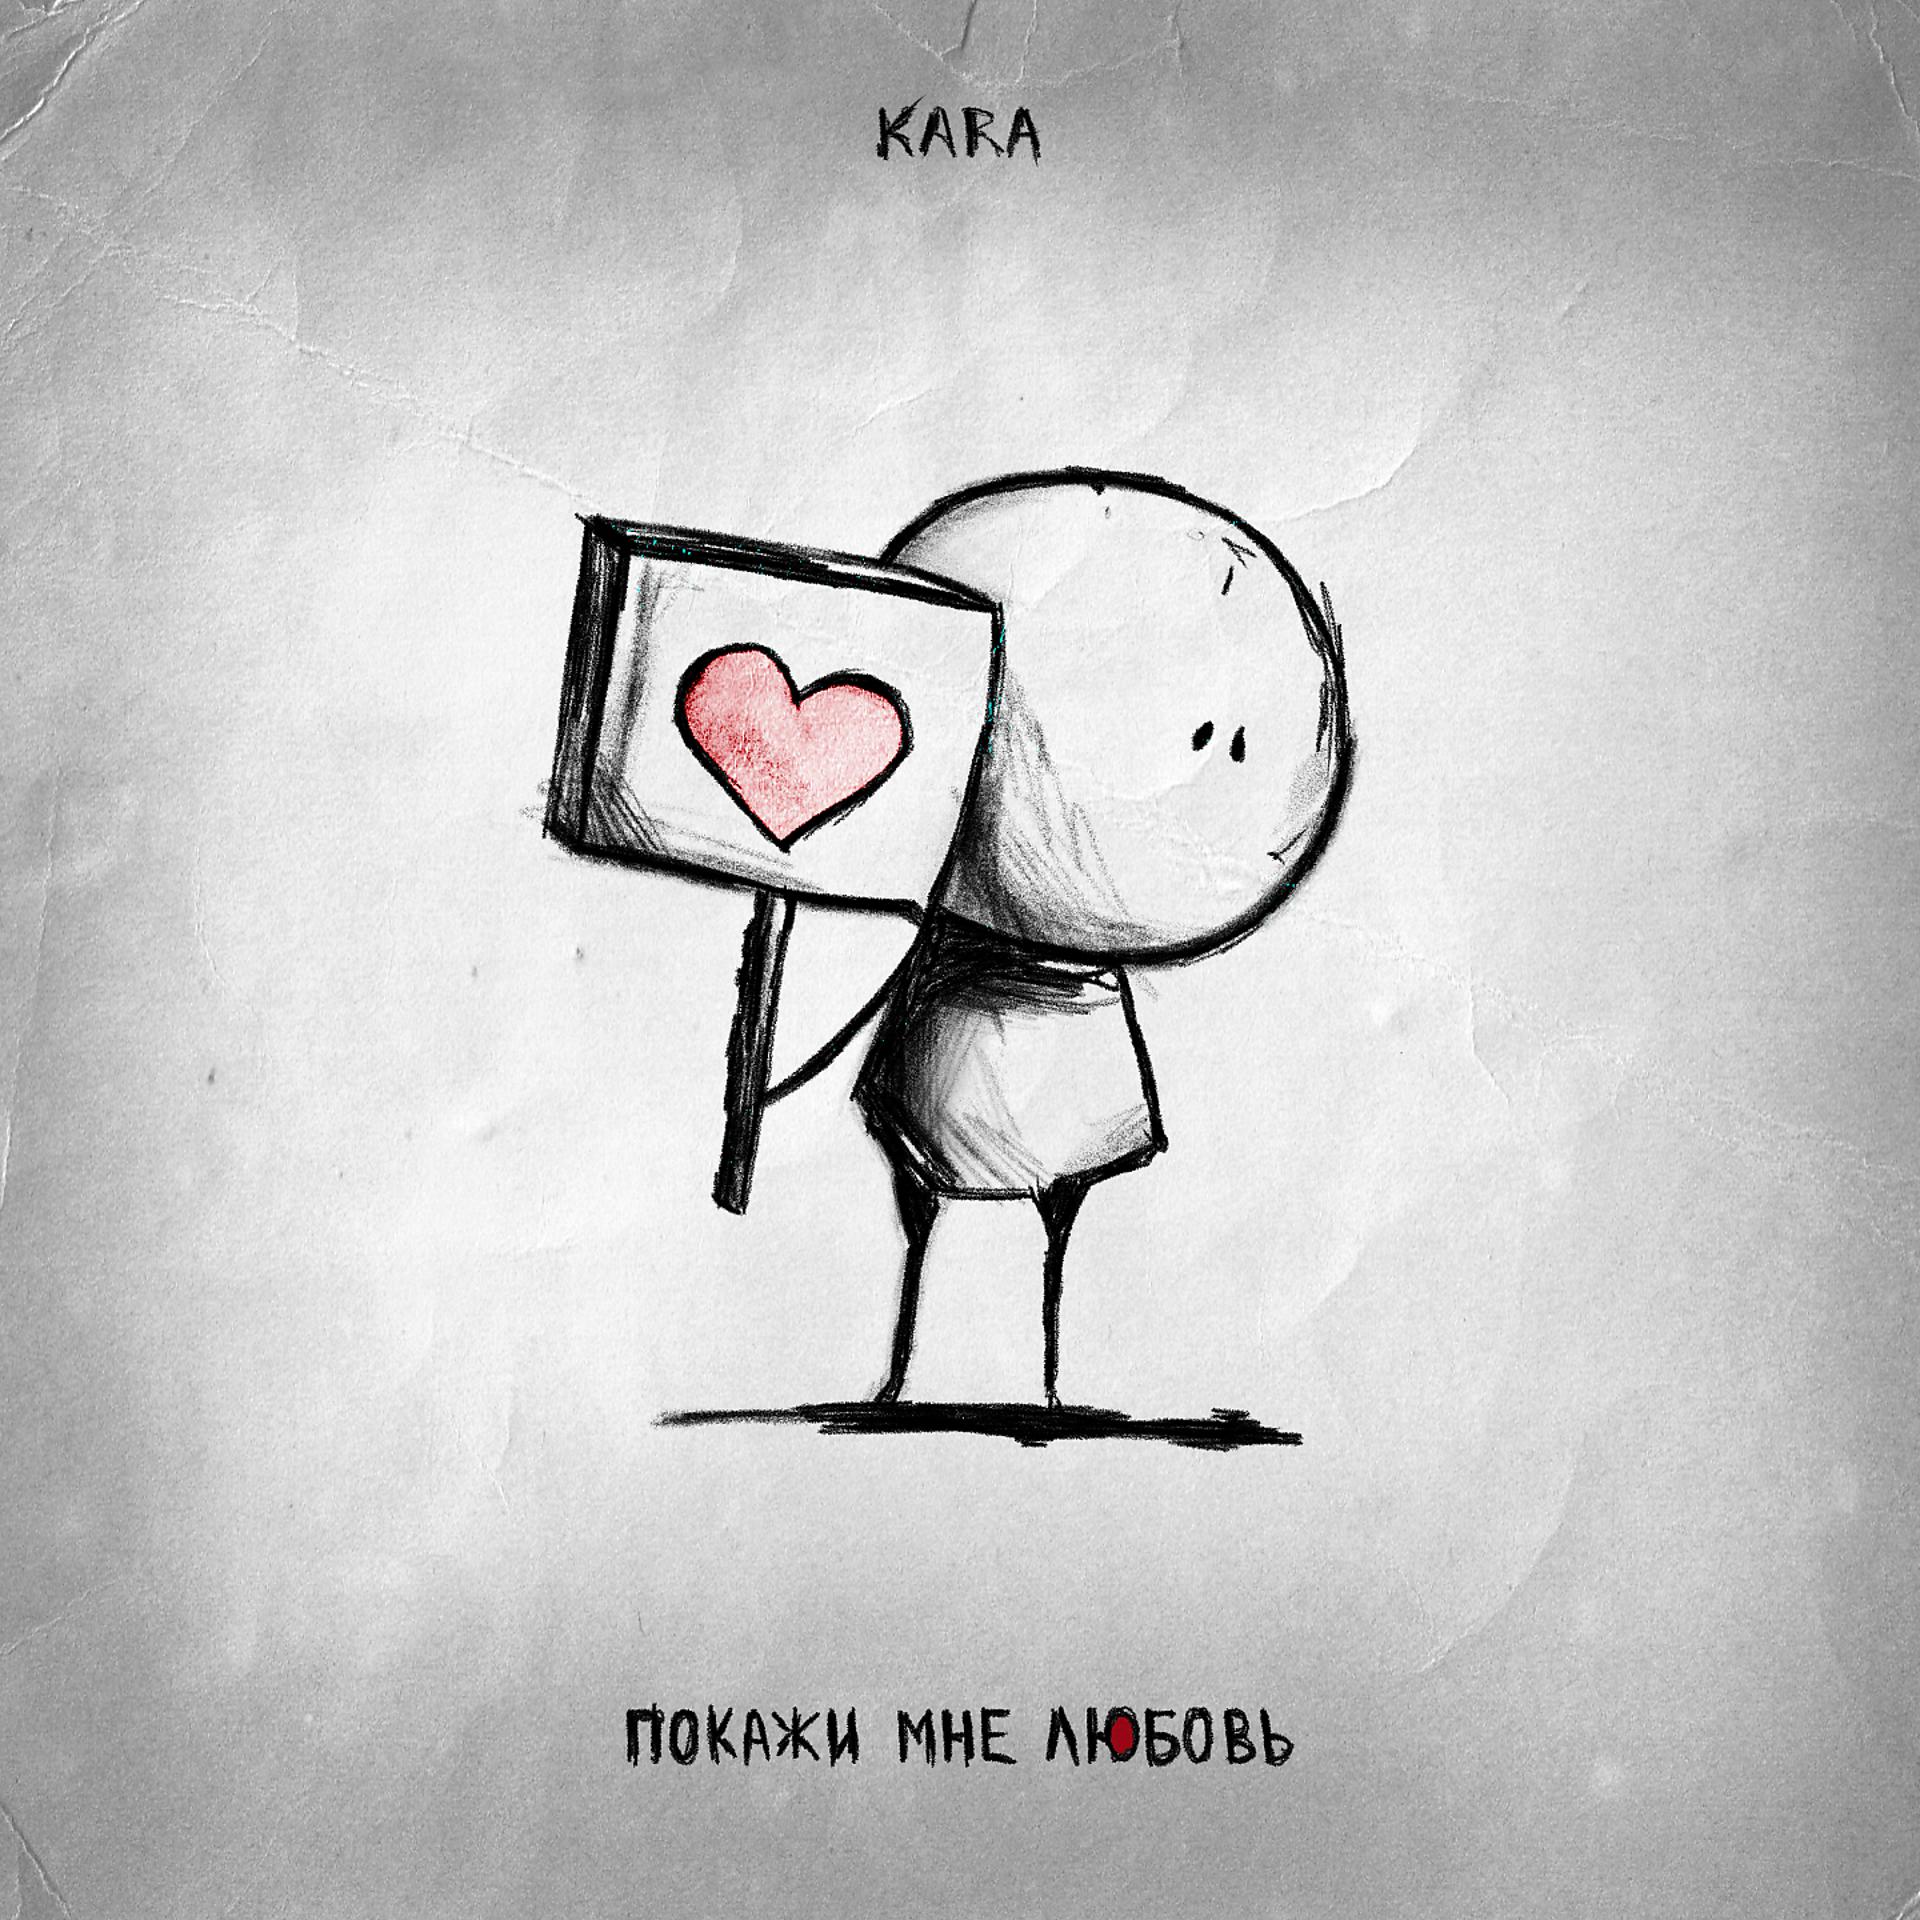 Постер к треку Kara - Покажи мне любовь